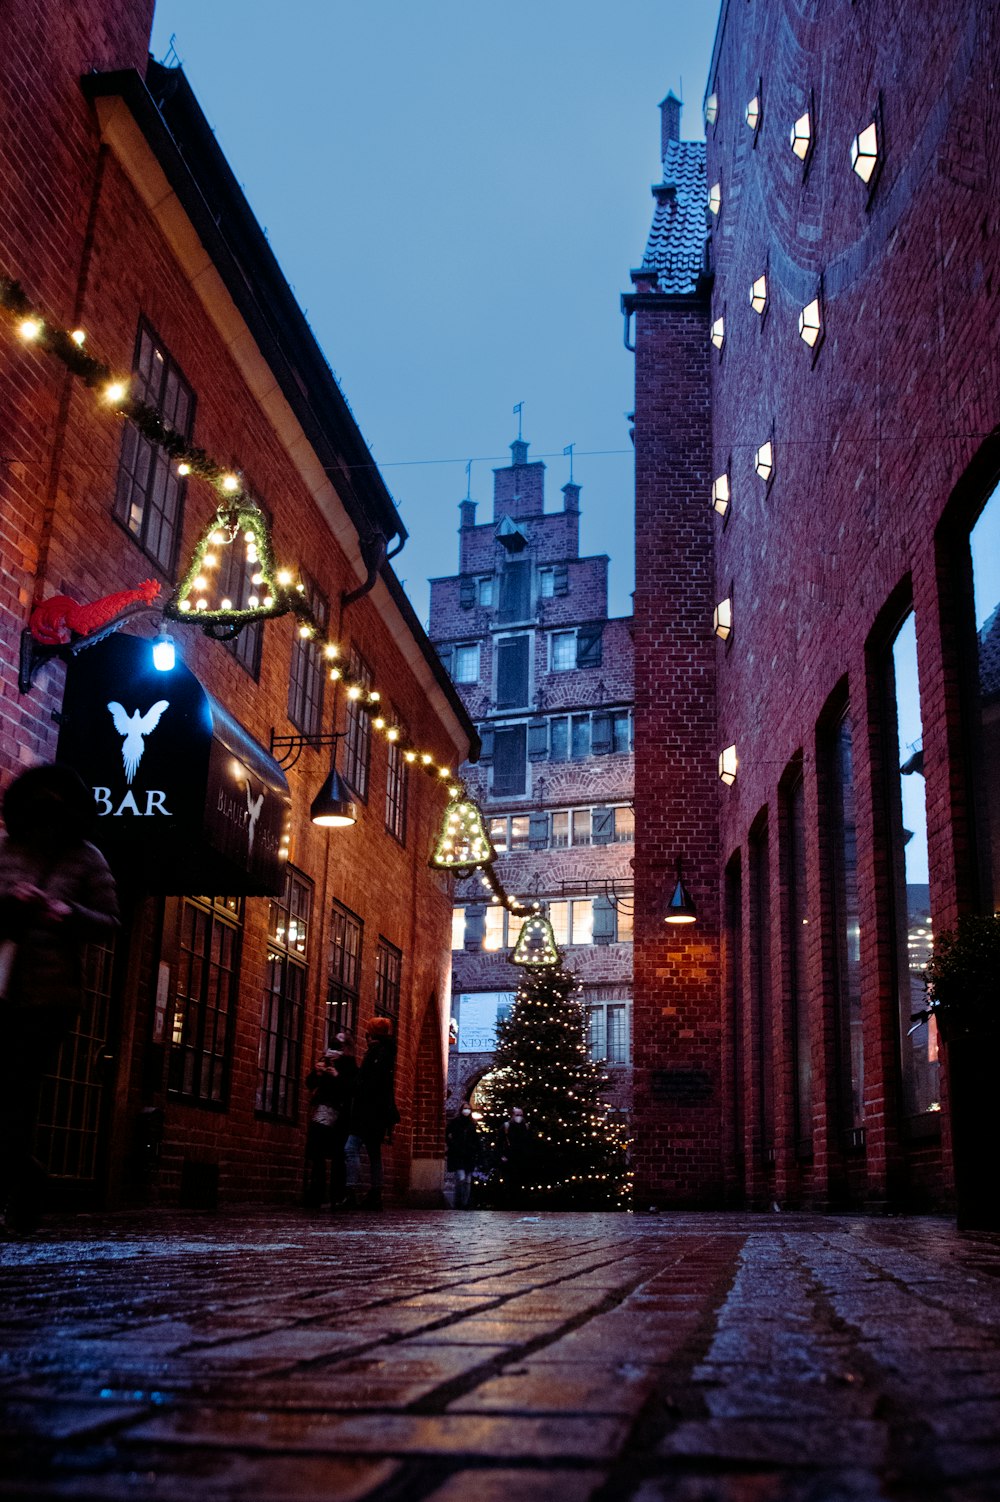 Un callejón de ladrillos con luces navideñas y un árbol de Navidad